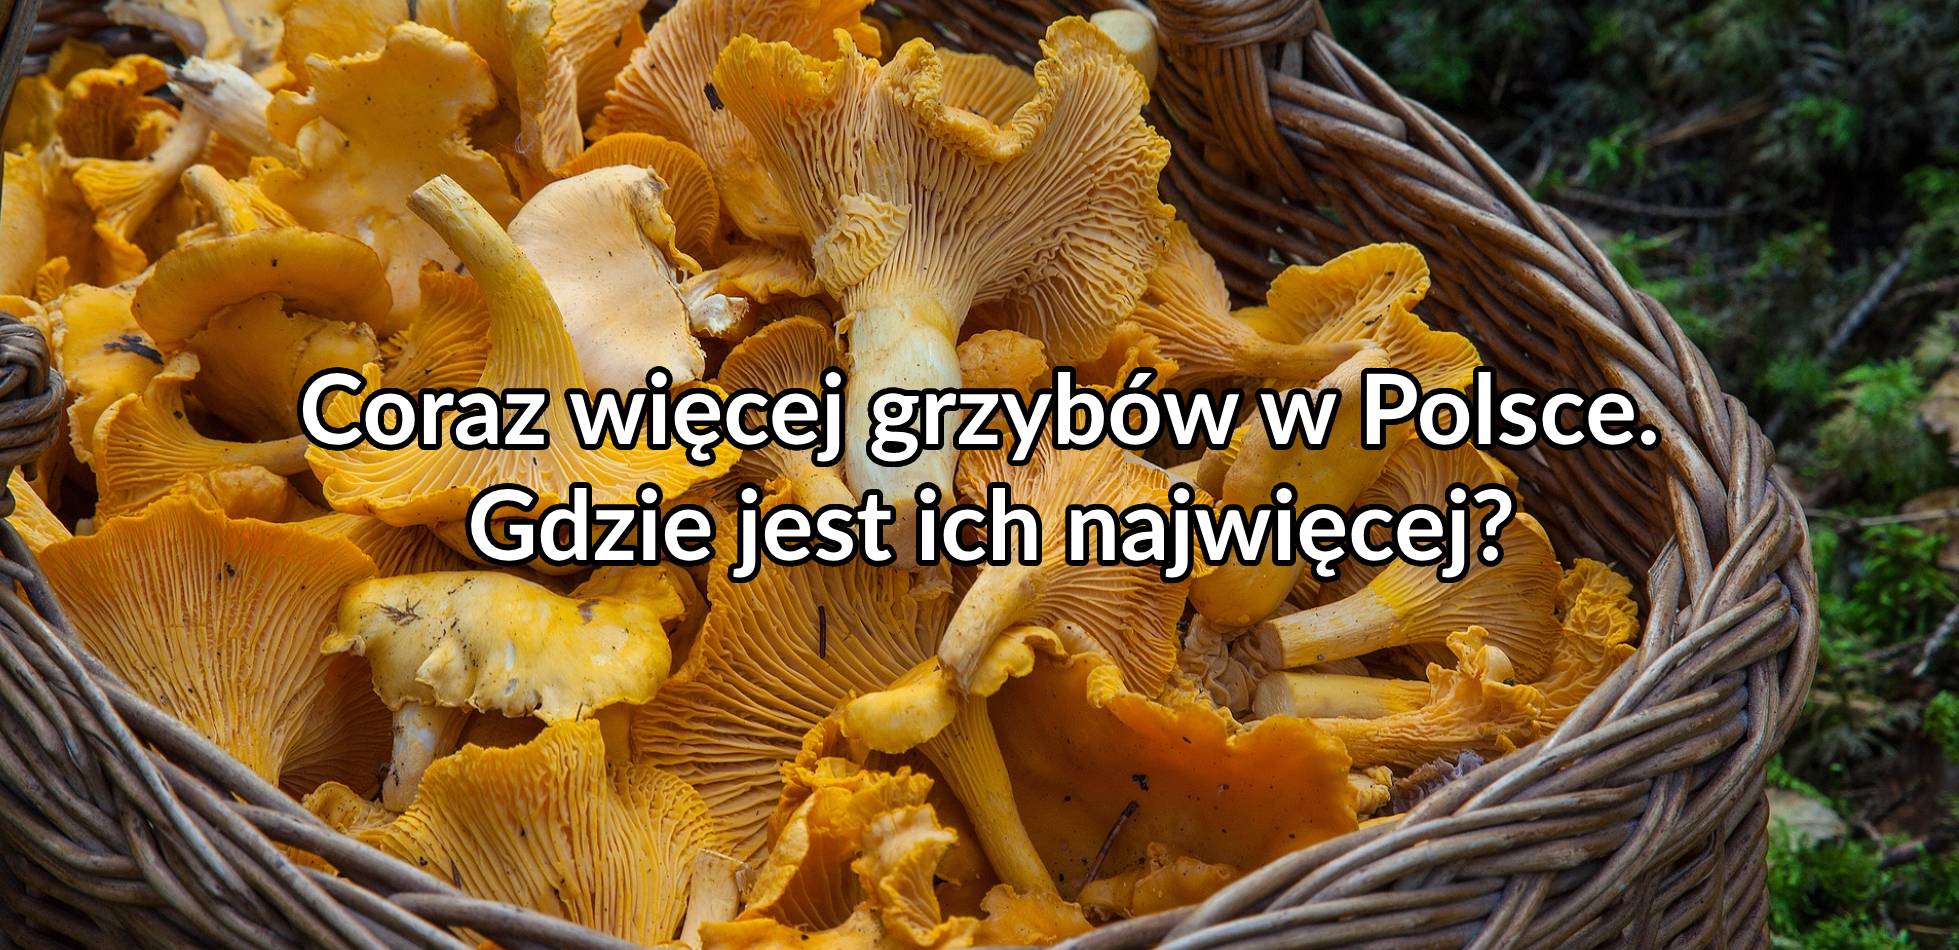 Coraz więcej grzybów w Polsce. Gdzie jest ich najwięcej?